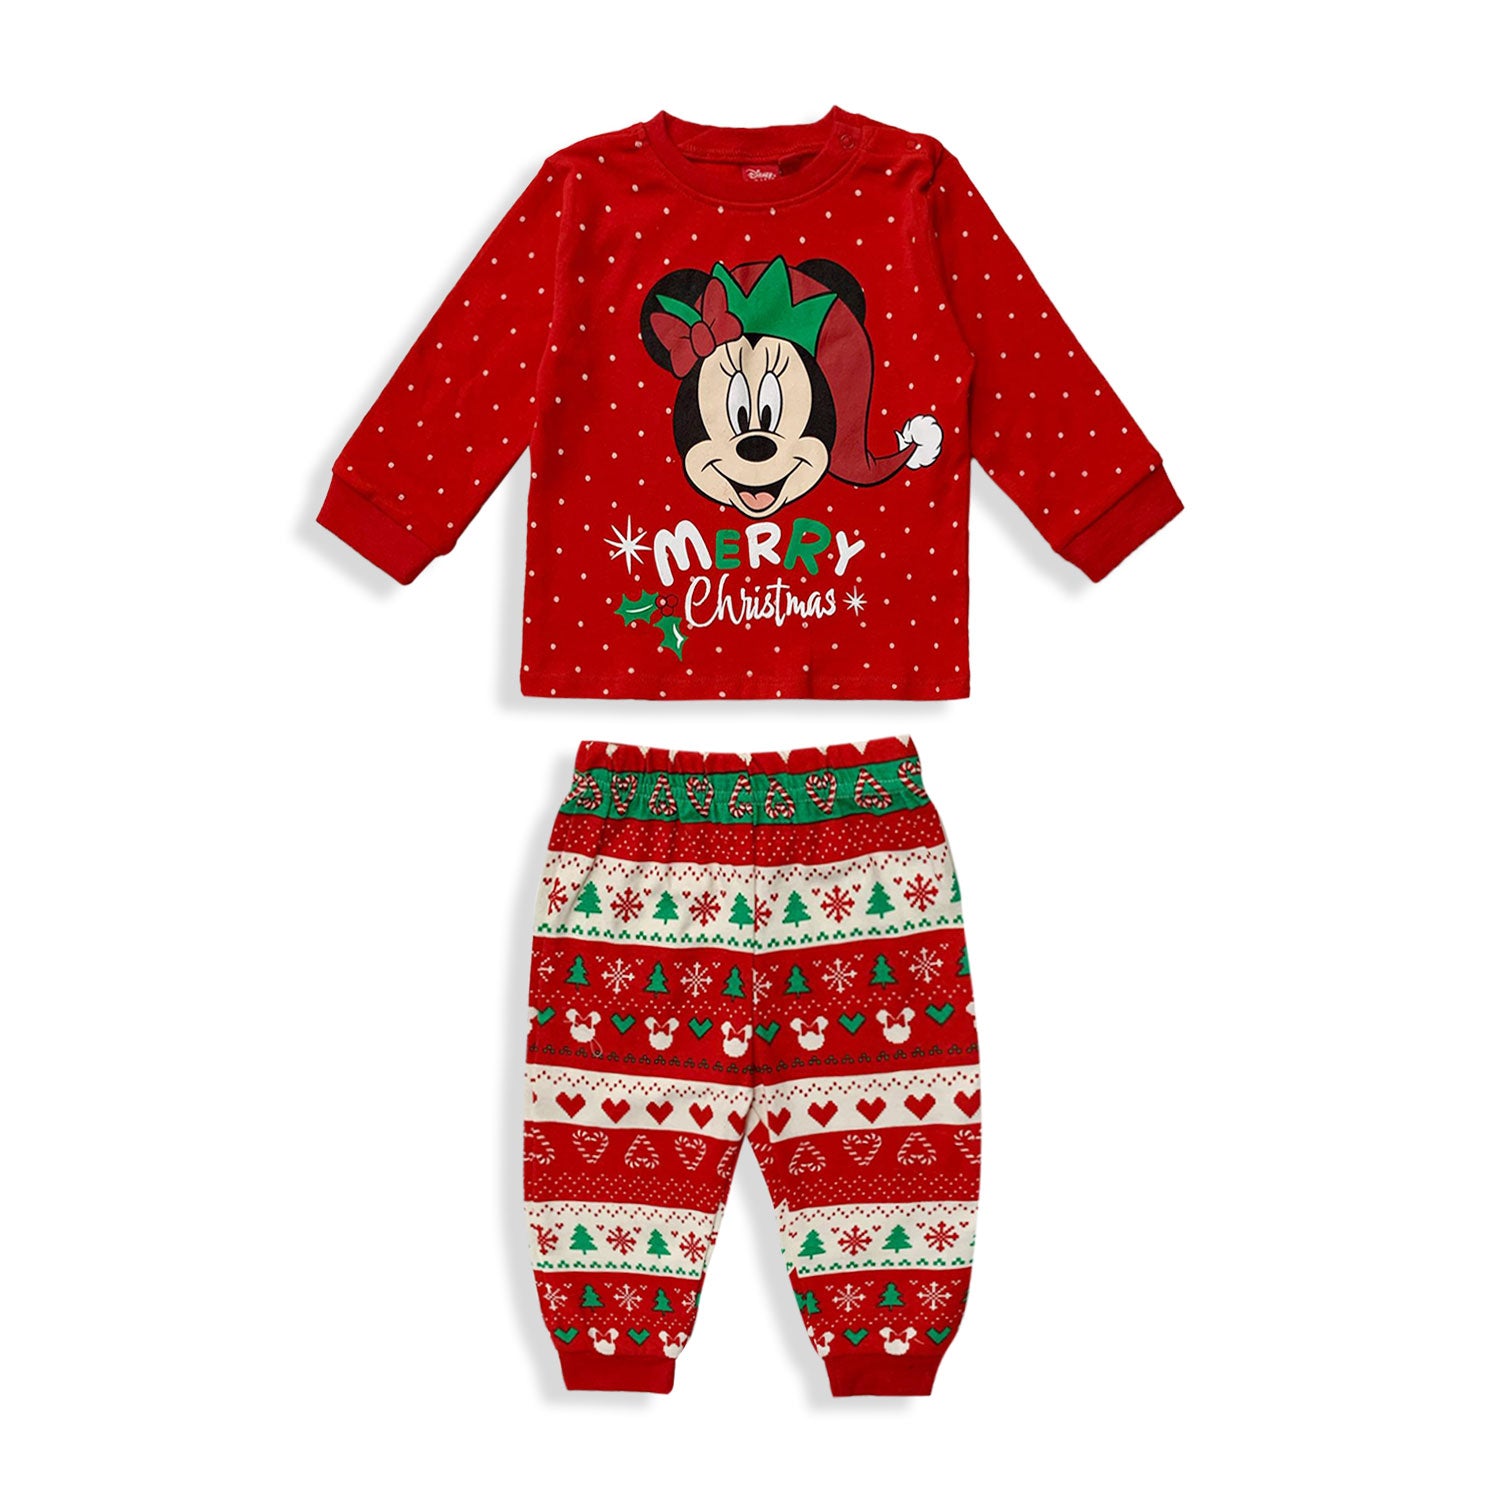 Pigiama natalizio Disney Minnie Mouse lungo neonato bimba in cotone Natale 5529